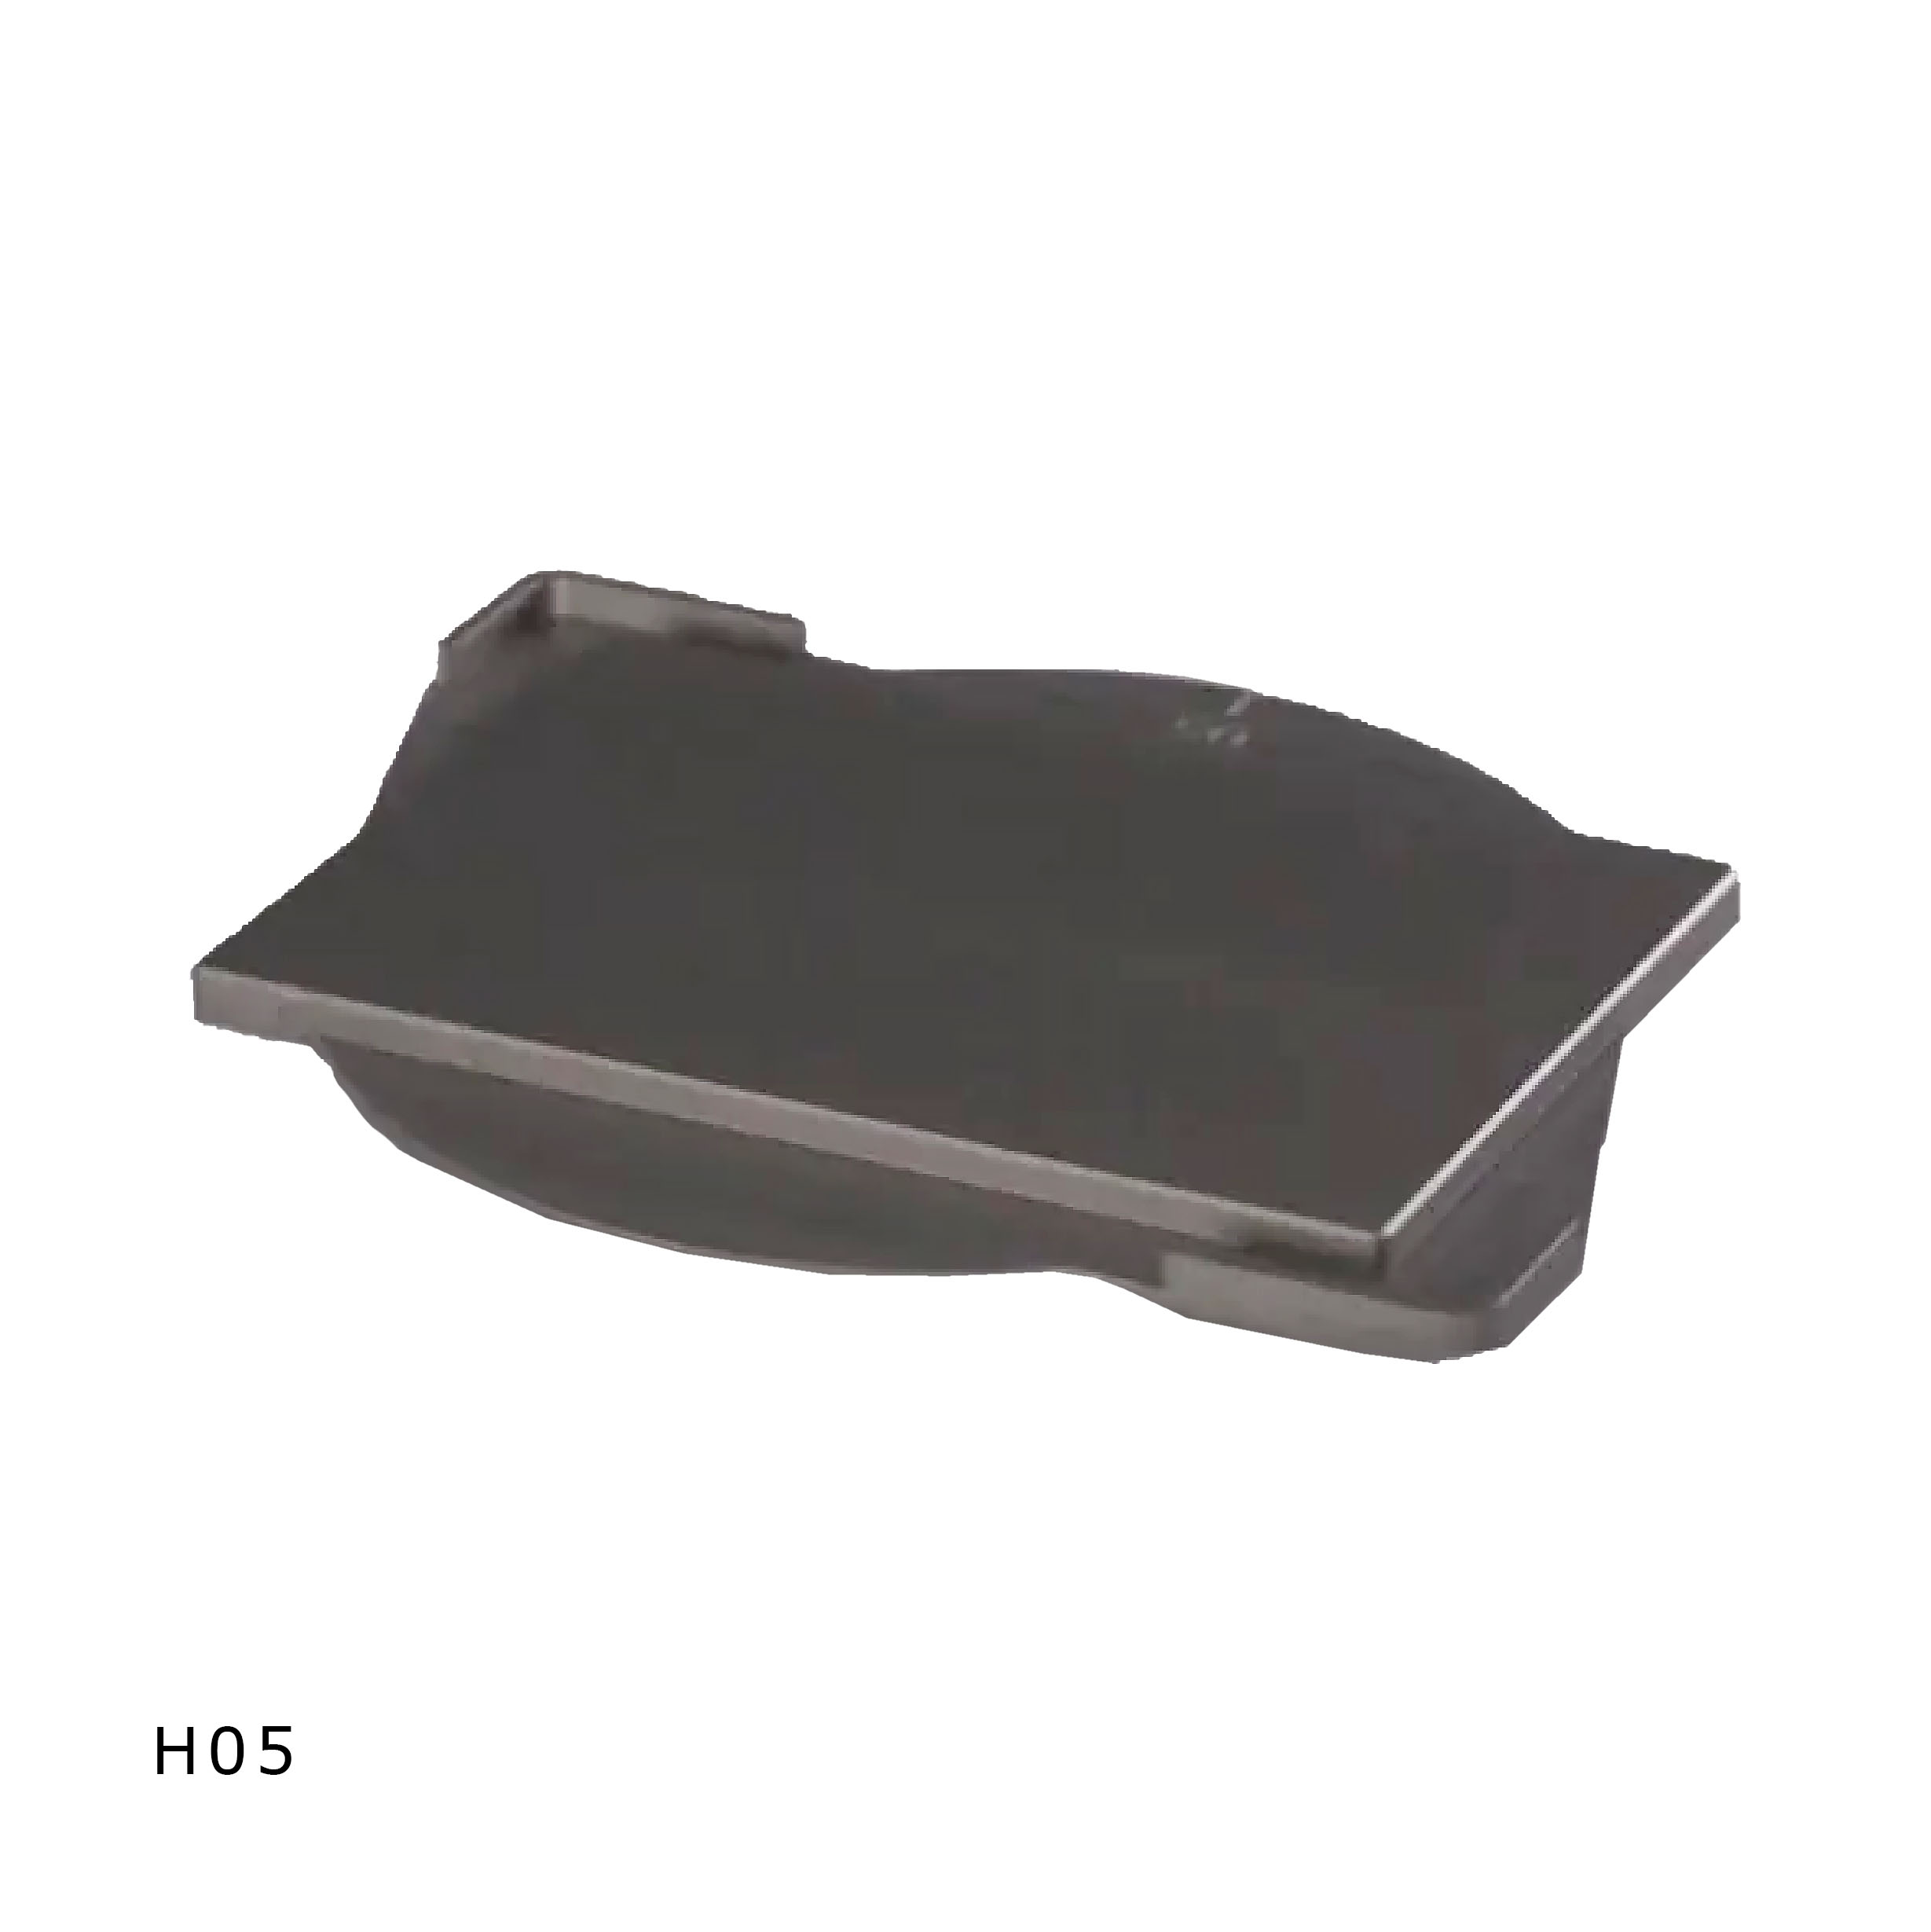 H05_1 x SBS Microplate